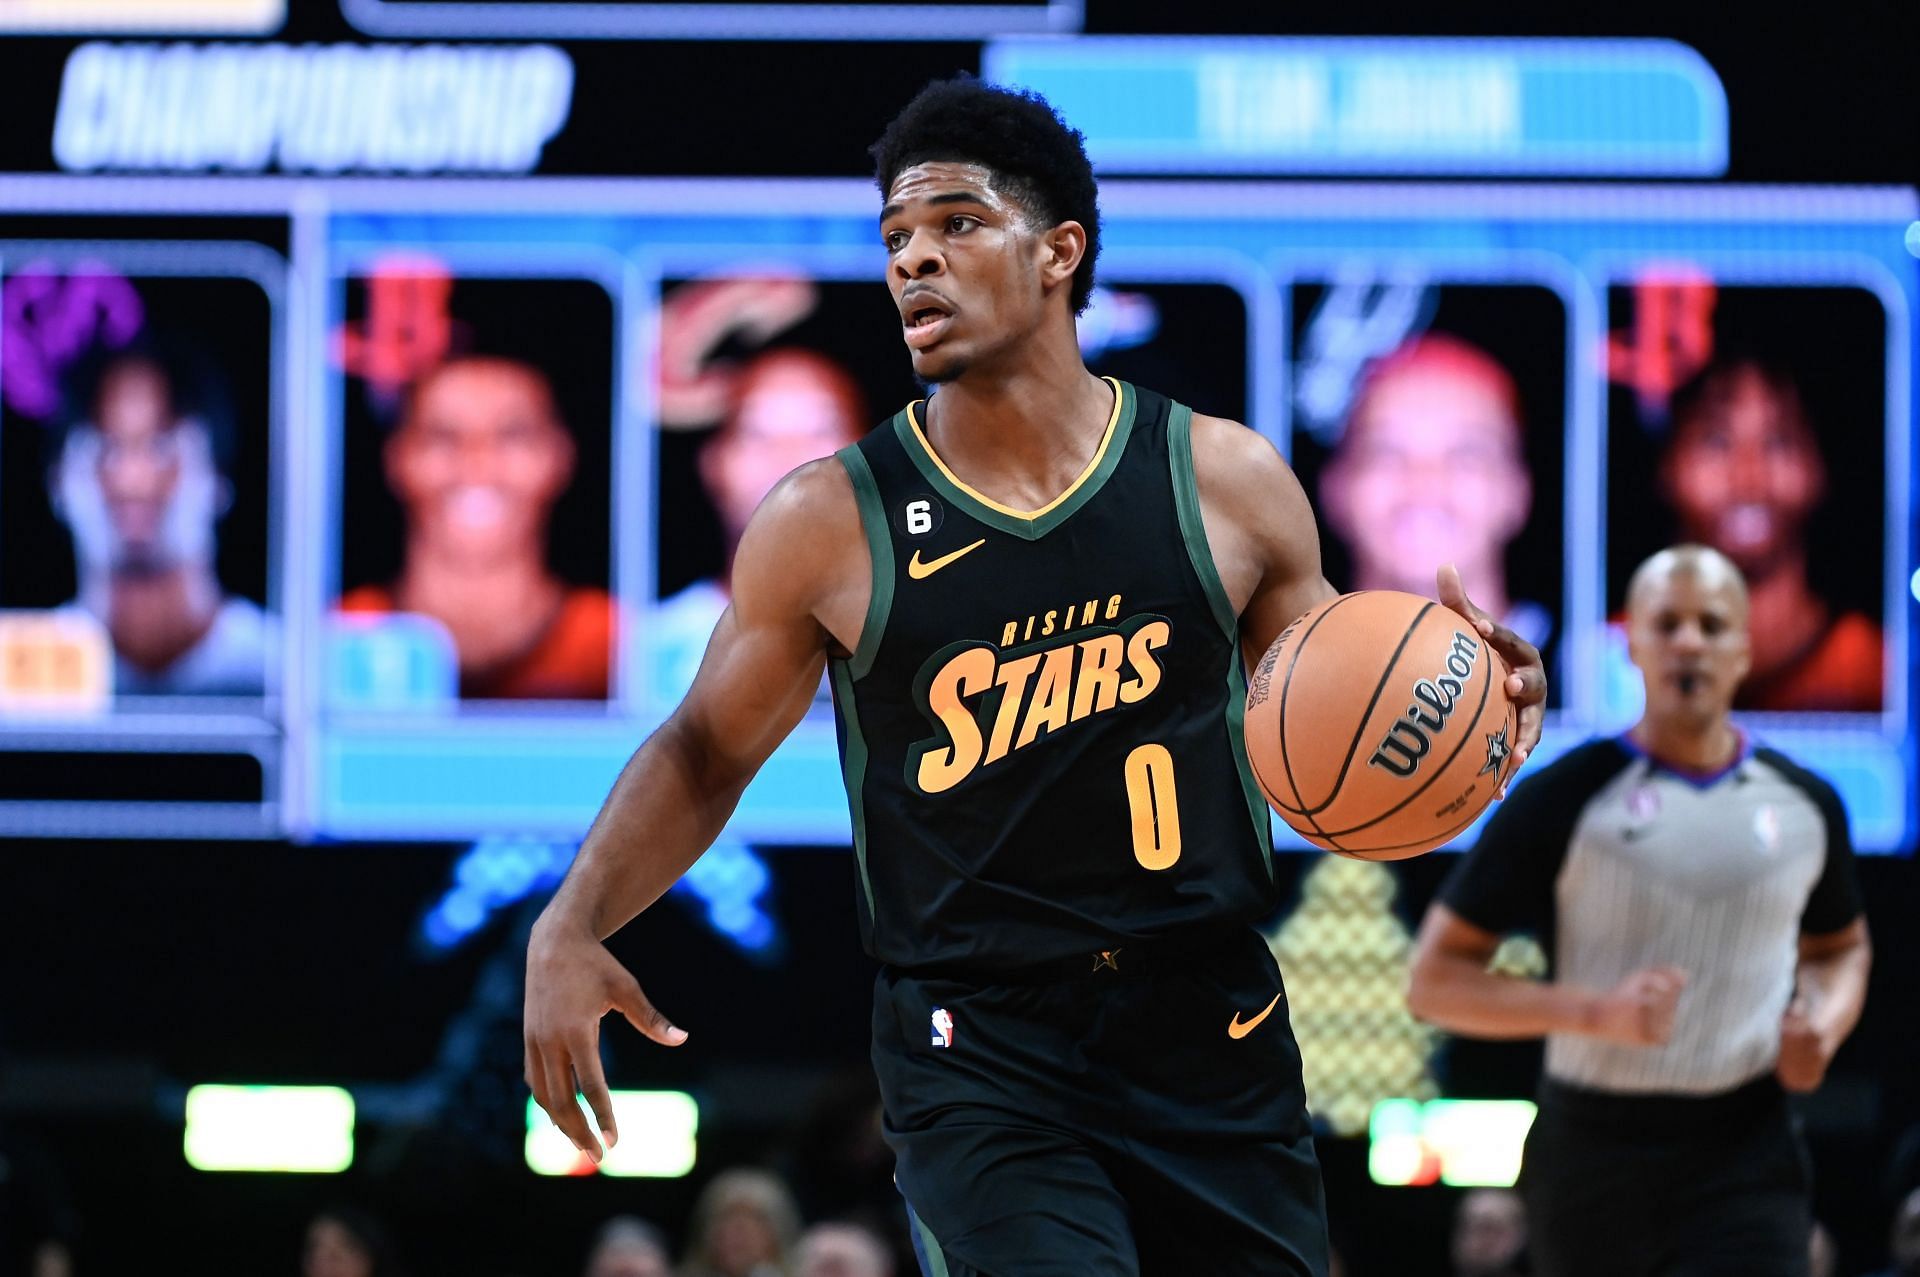 2023 NBA All Star: Jordan Rising Stars Game